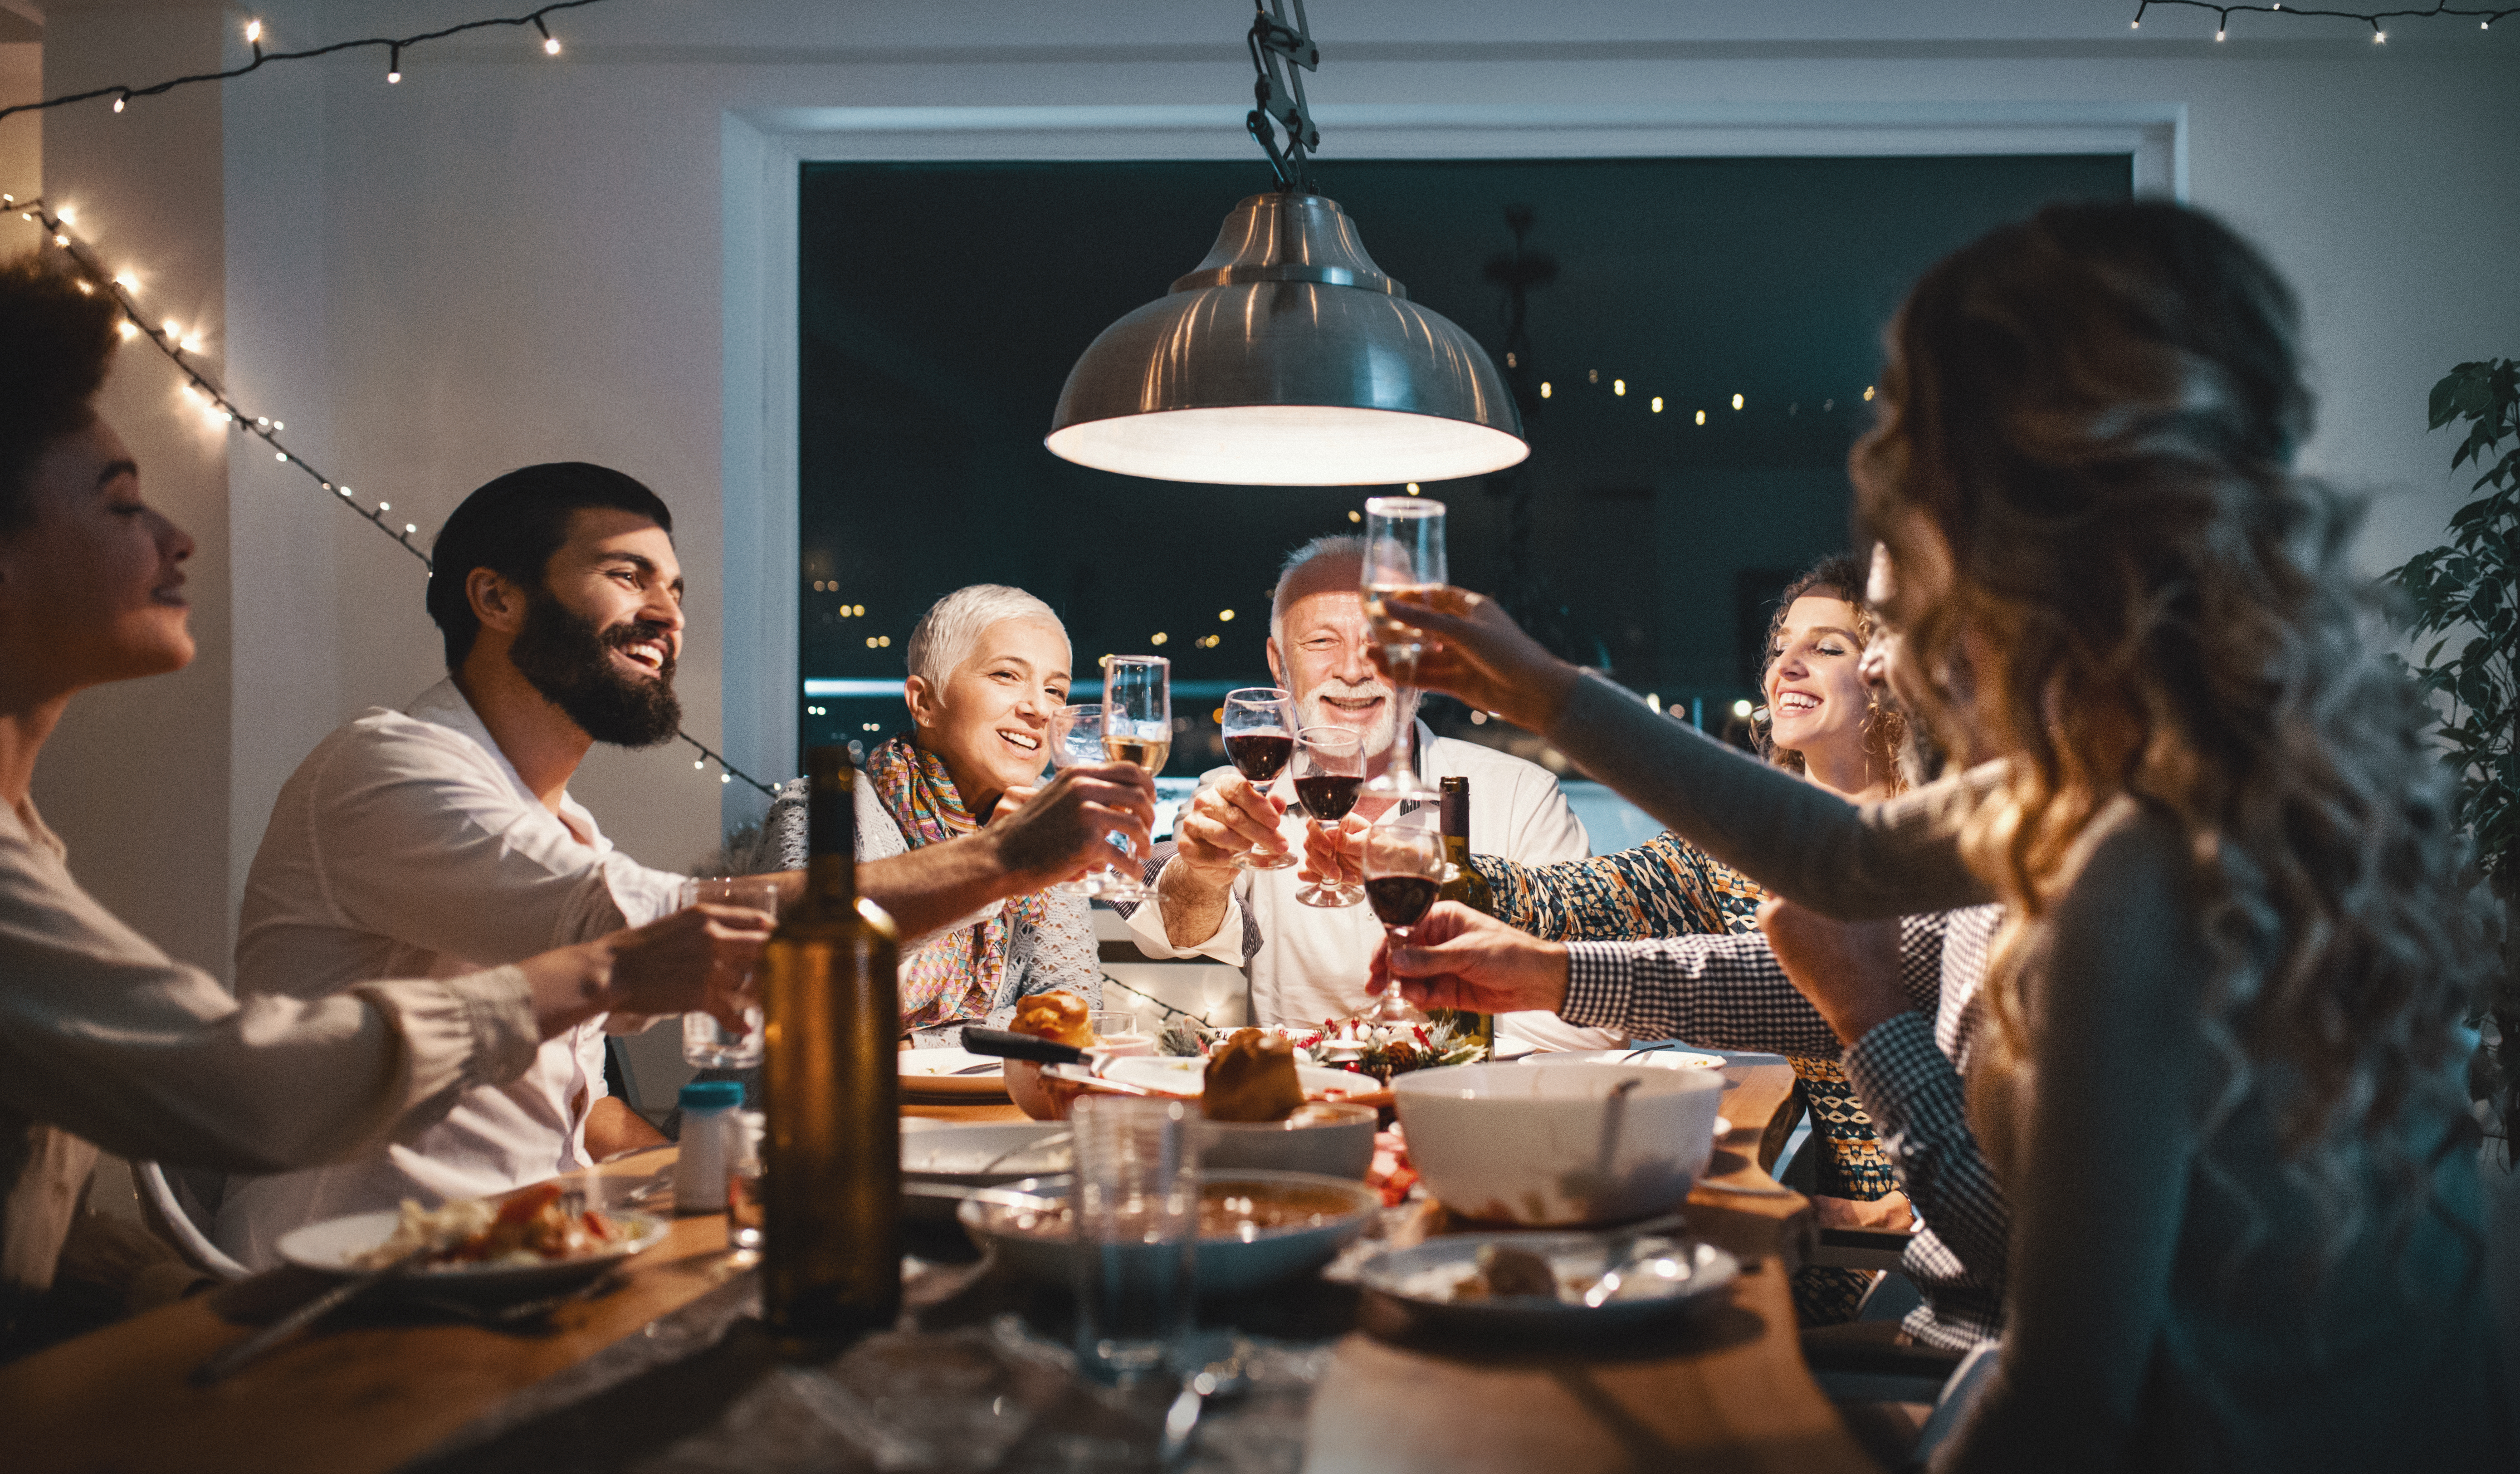 Una familia brindando durante la cena | Fuente: Getty Images